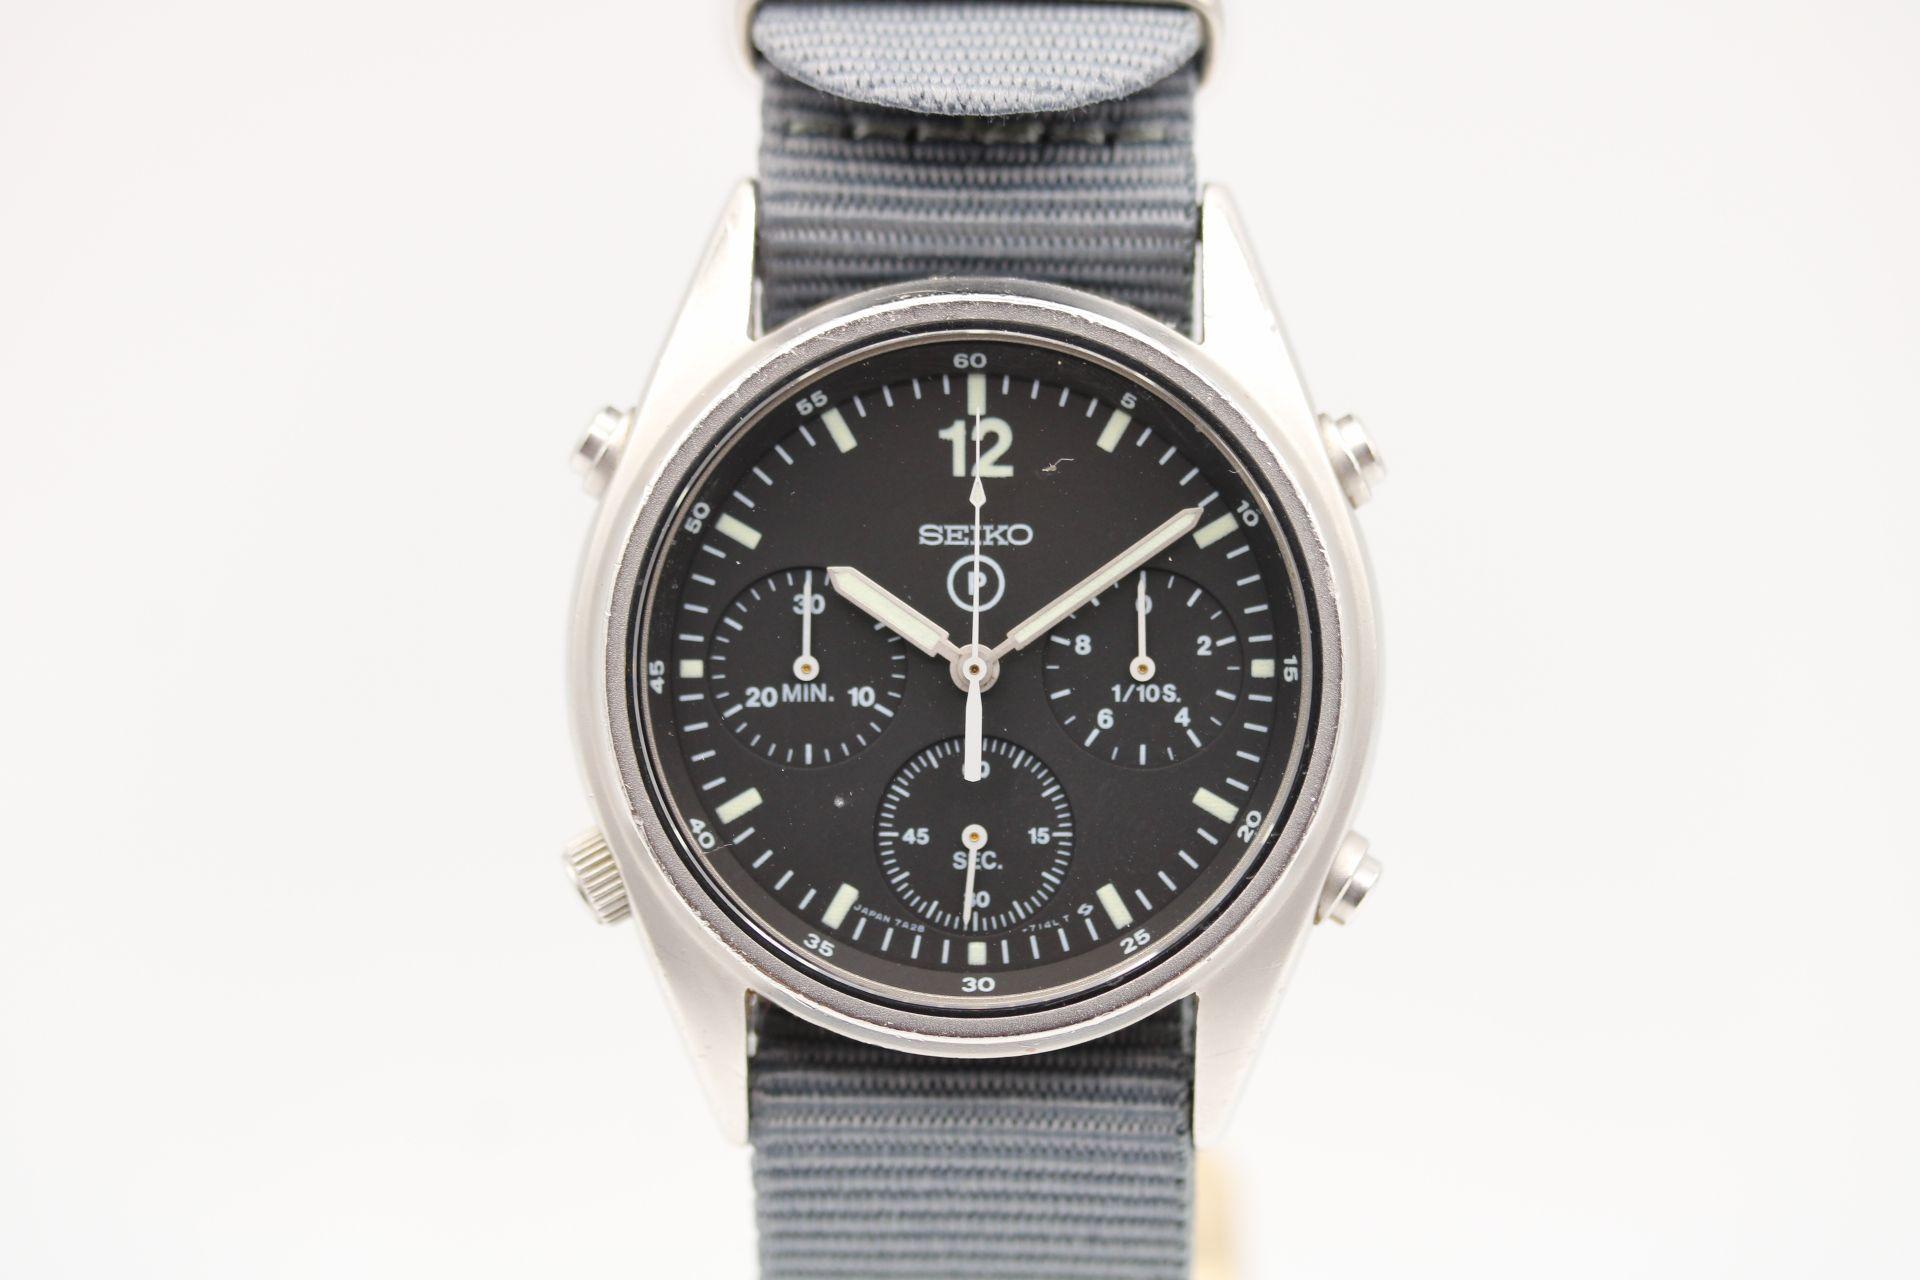 Montre : Seiko Generation 1 7A28-7120
Numéro d'inventaire : CHW5331
Prix : £995.00

Chronographe Seiko de la génération 1, original et en état de marche, fabriqué pour la RAF britannique en 1990. Ayant été utilisée en service comme outil, la montre